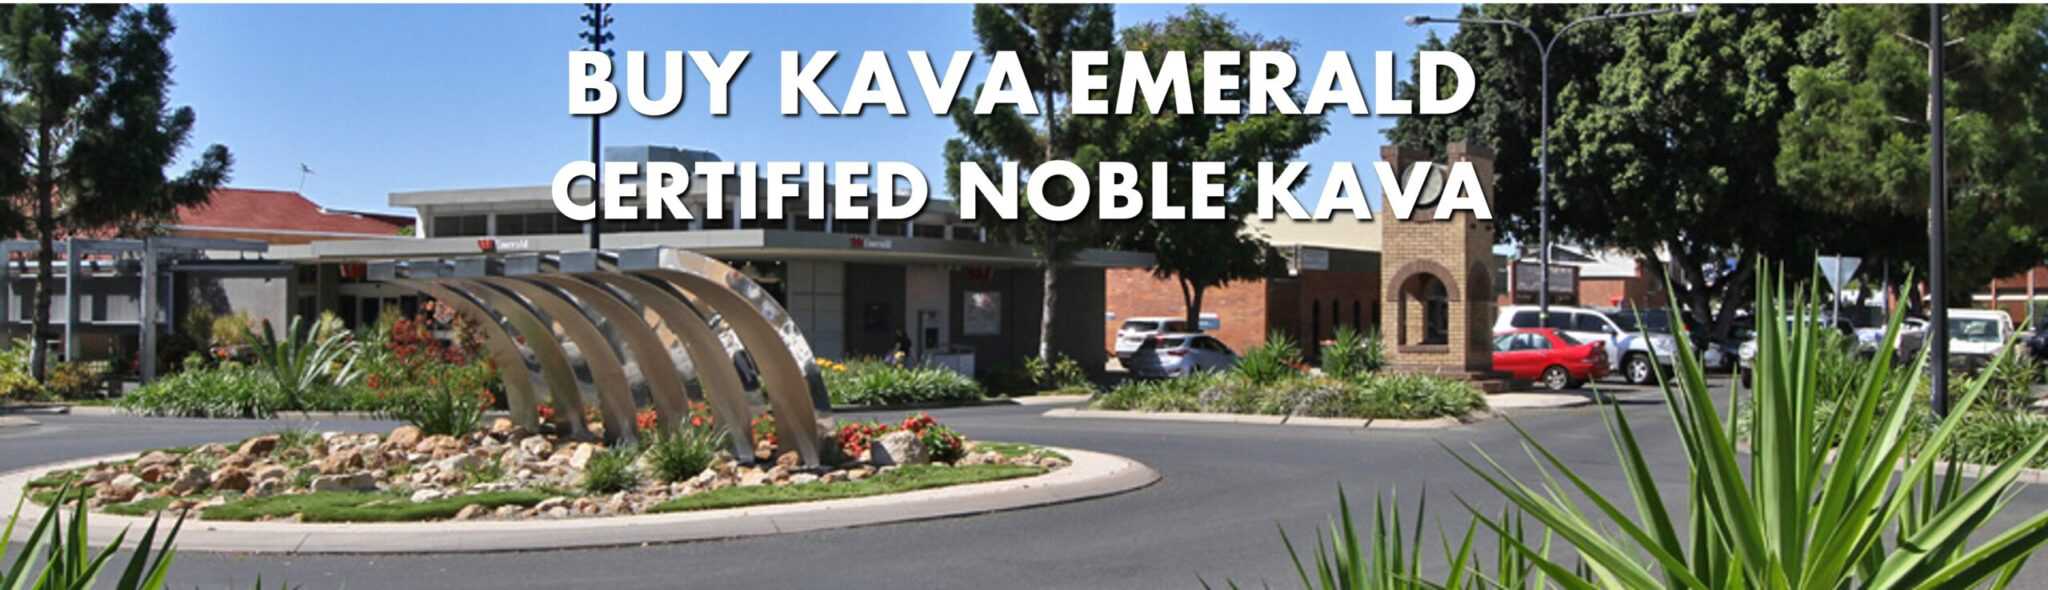 Street scene in Emerald Queensland with caption Buy Kava Emerald Certified Noble Kava